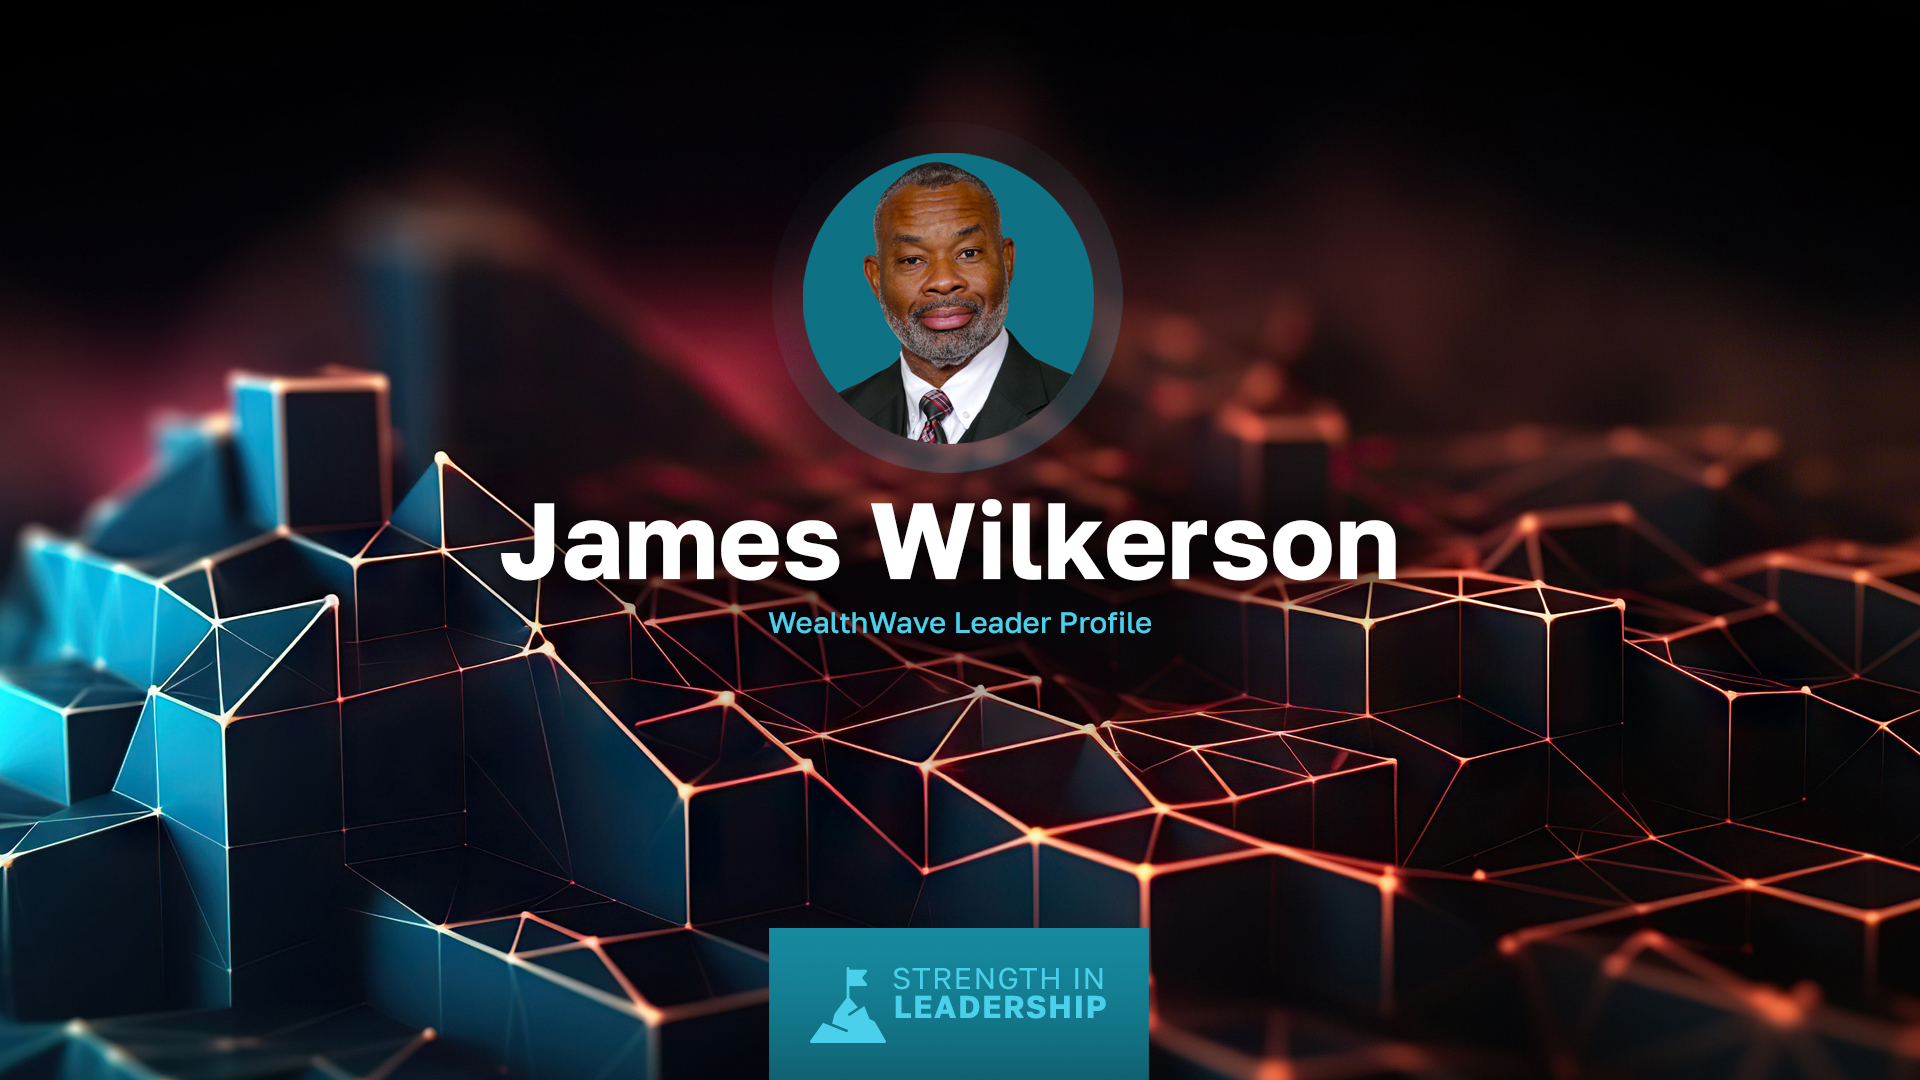 Profil d'un leader : James Wilkerson - D'officier de marine à leader du secteur financier